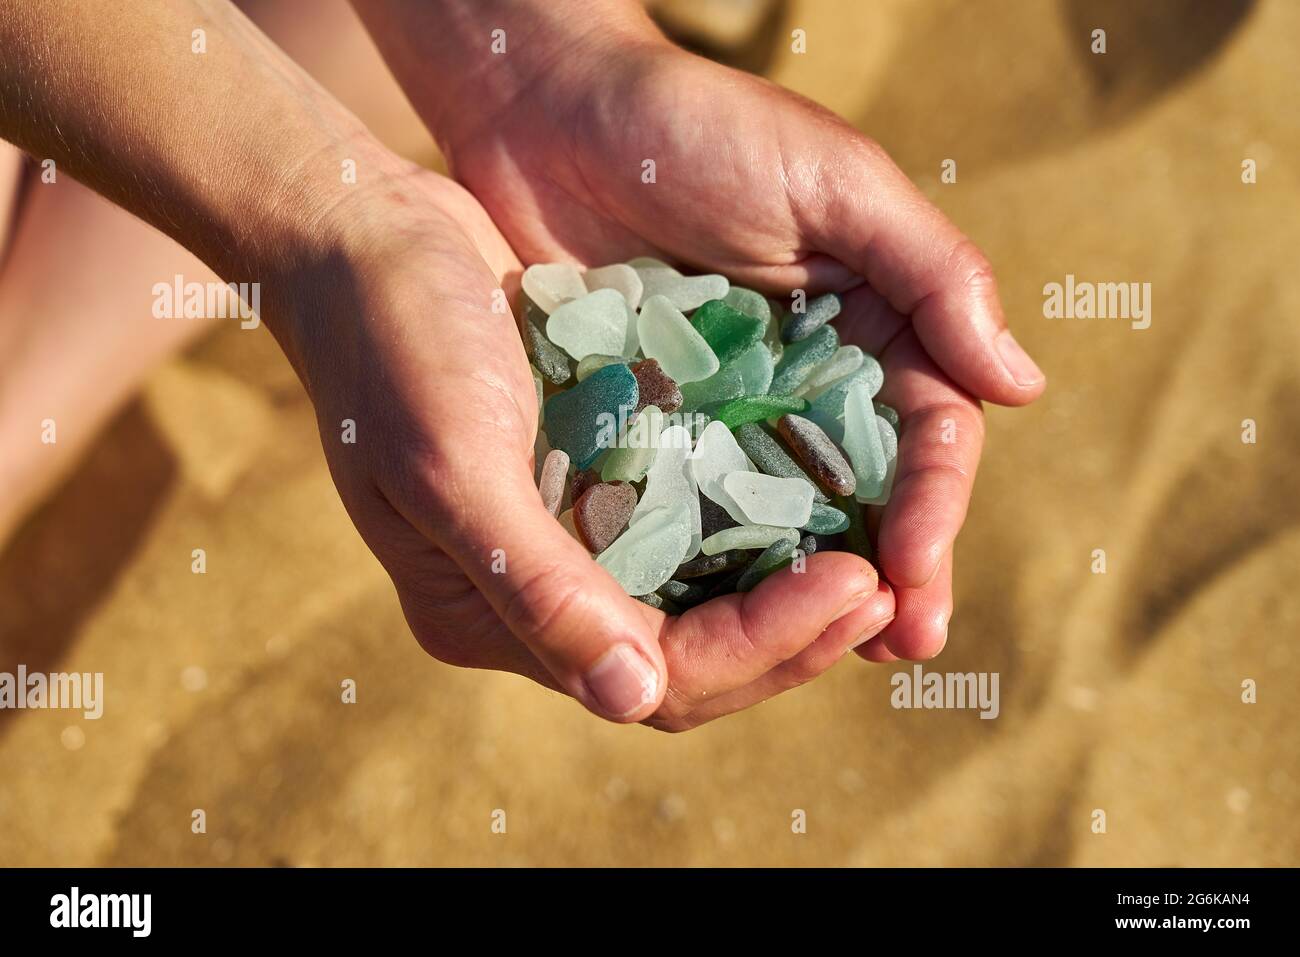 Les mains en forme de cuvette tiennent le verre de mer recueilli de la plage Banque D'Images